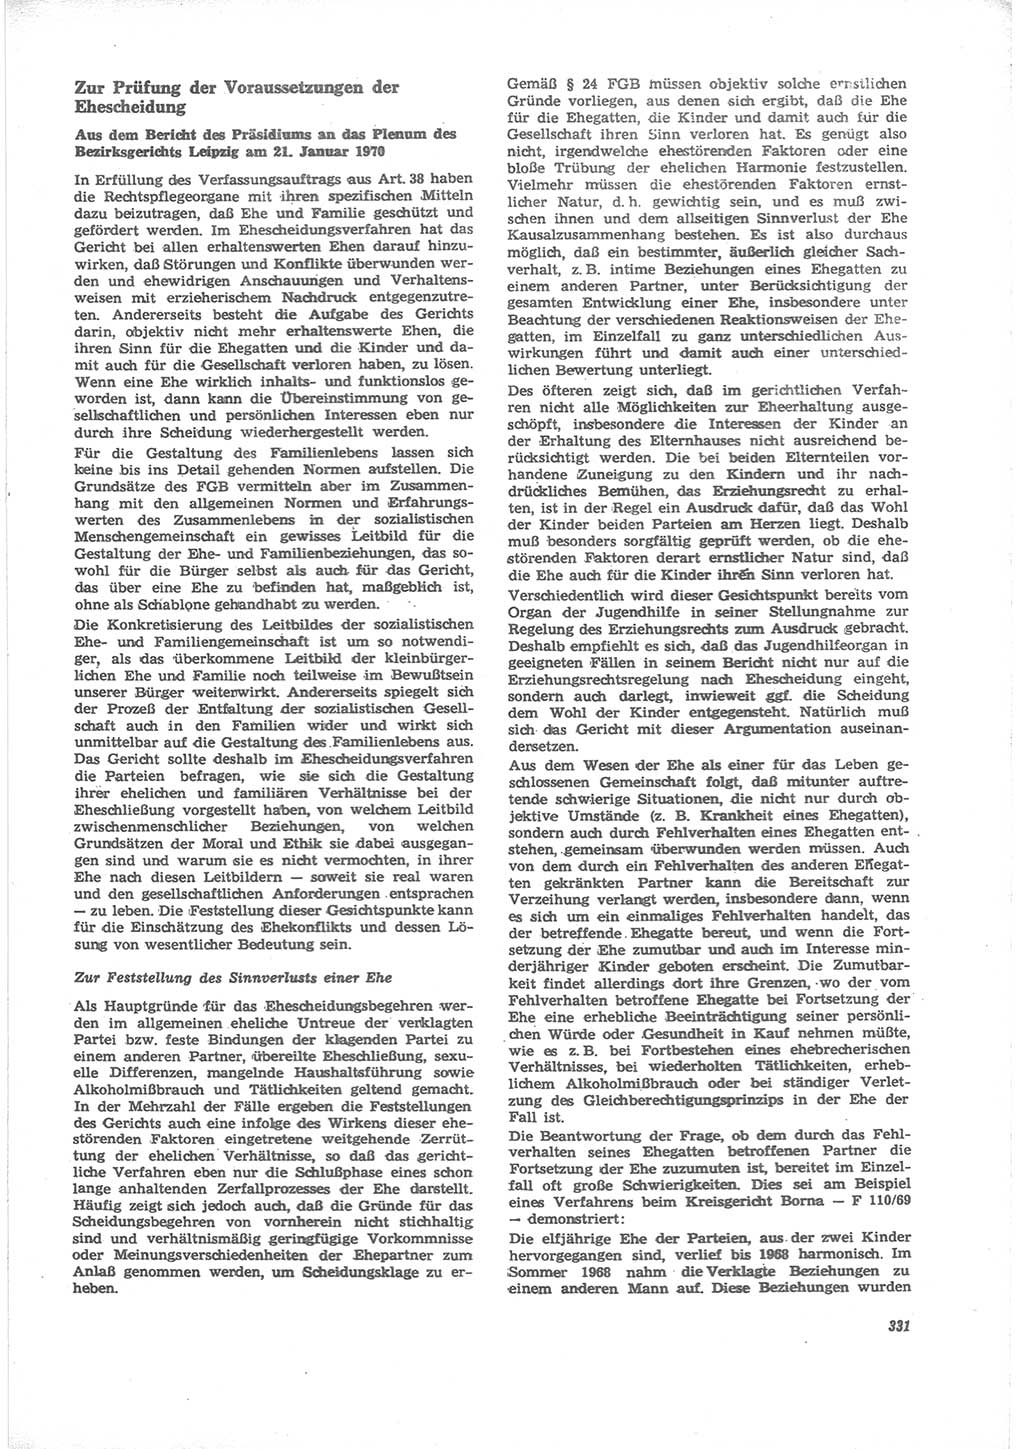 Neue Justiz (NJ), Zeitschrift für Recht und Rechtswissenschaft [Deutsche Demokratische Republik (DDR)], 24. Jahrgang 1970, Seite 331 (NJ DDR 1970, S. 331)